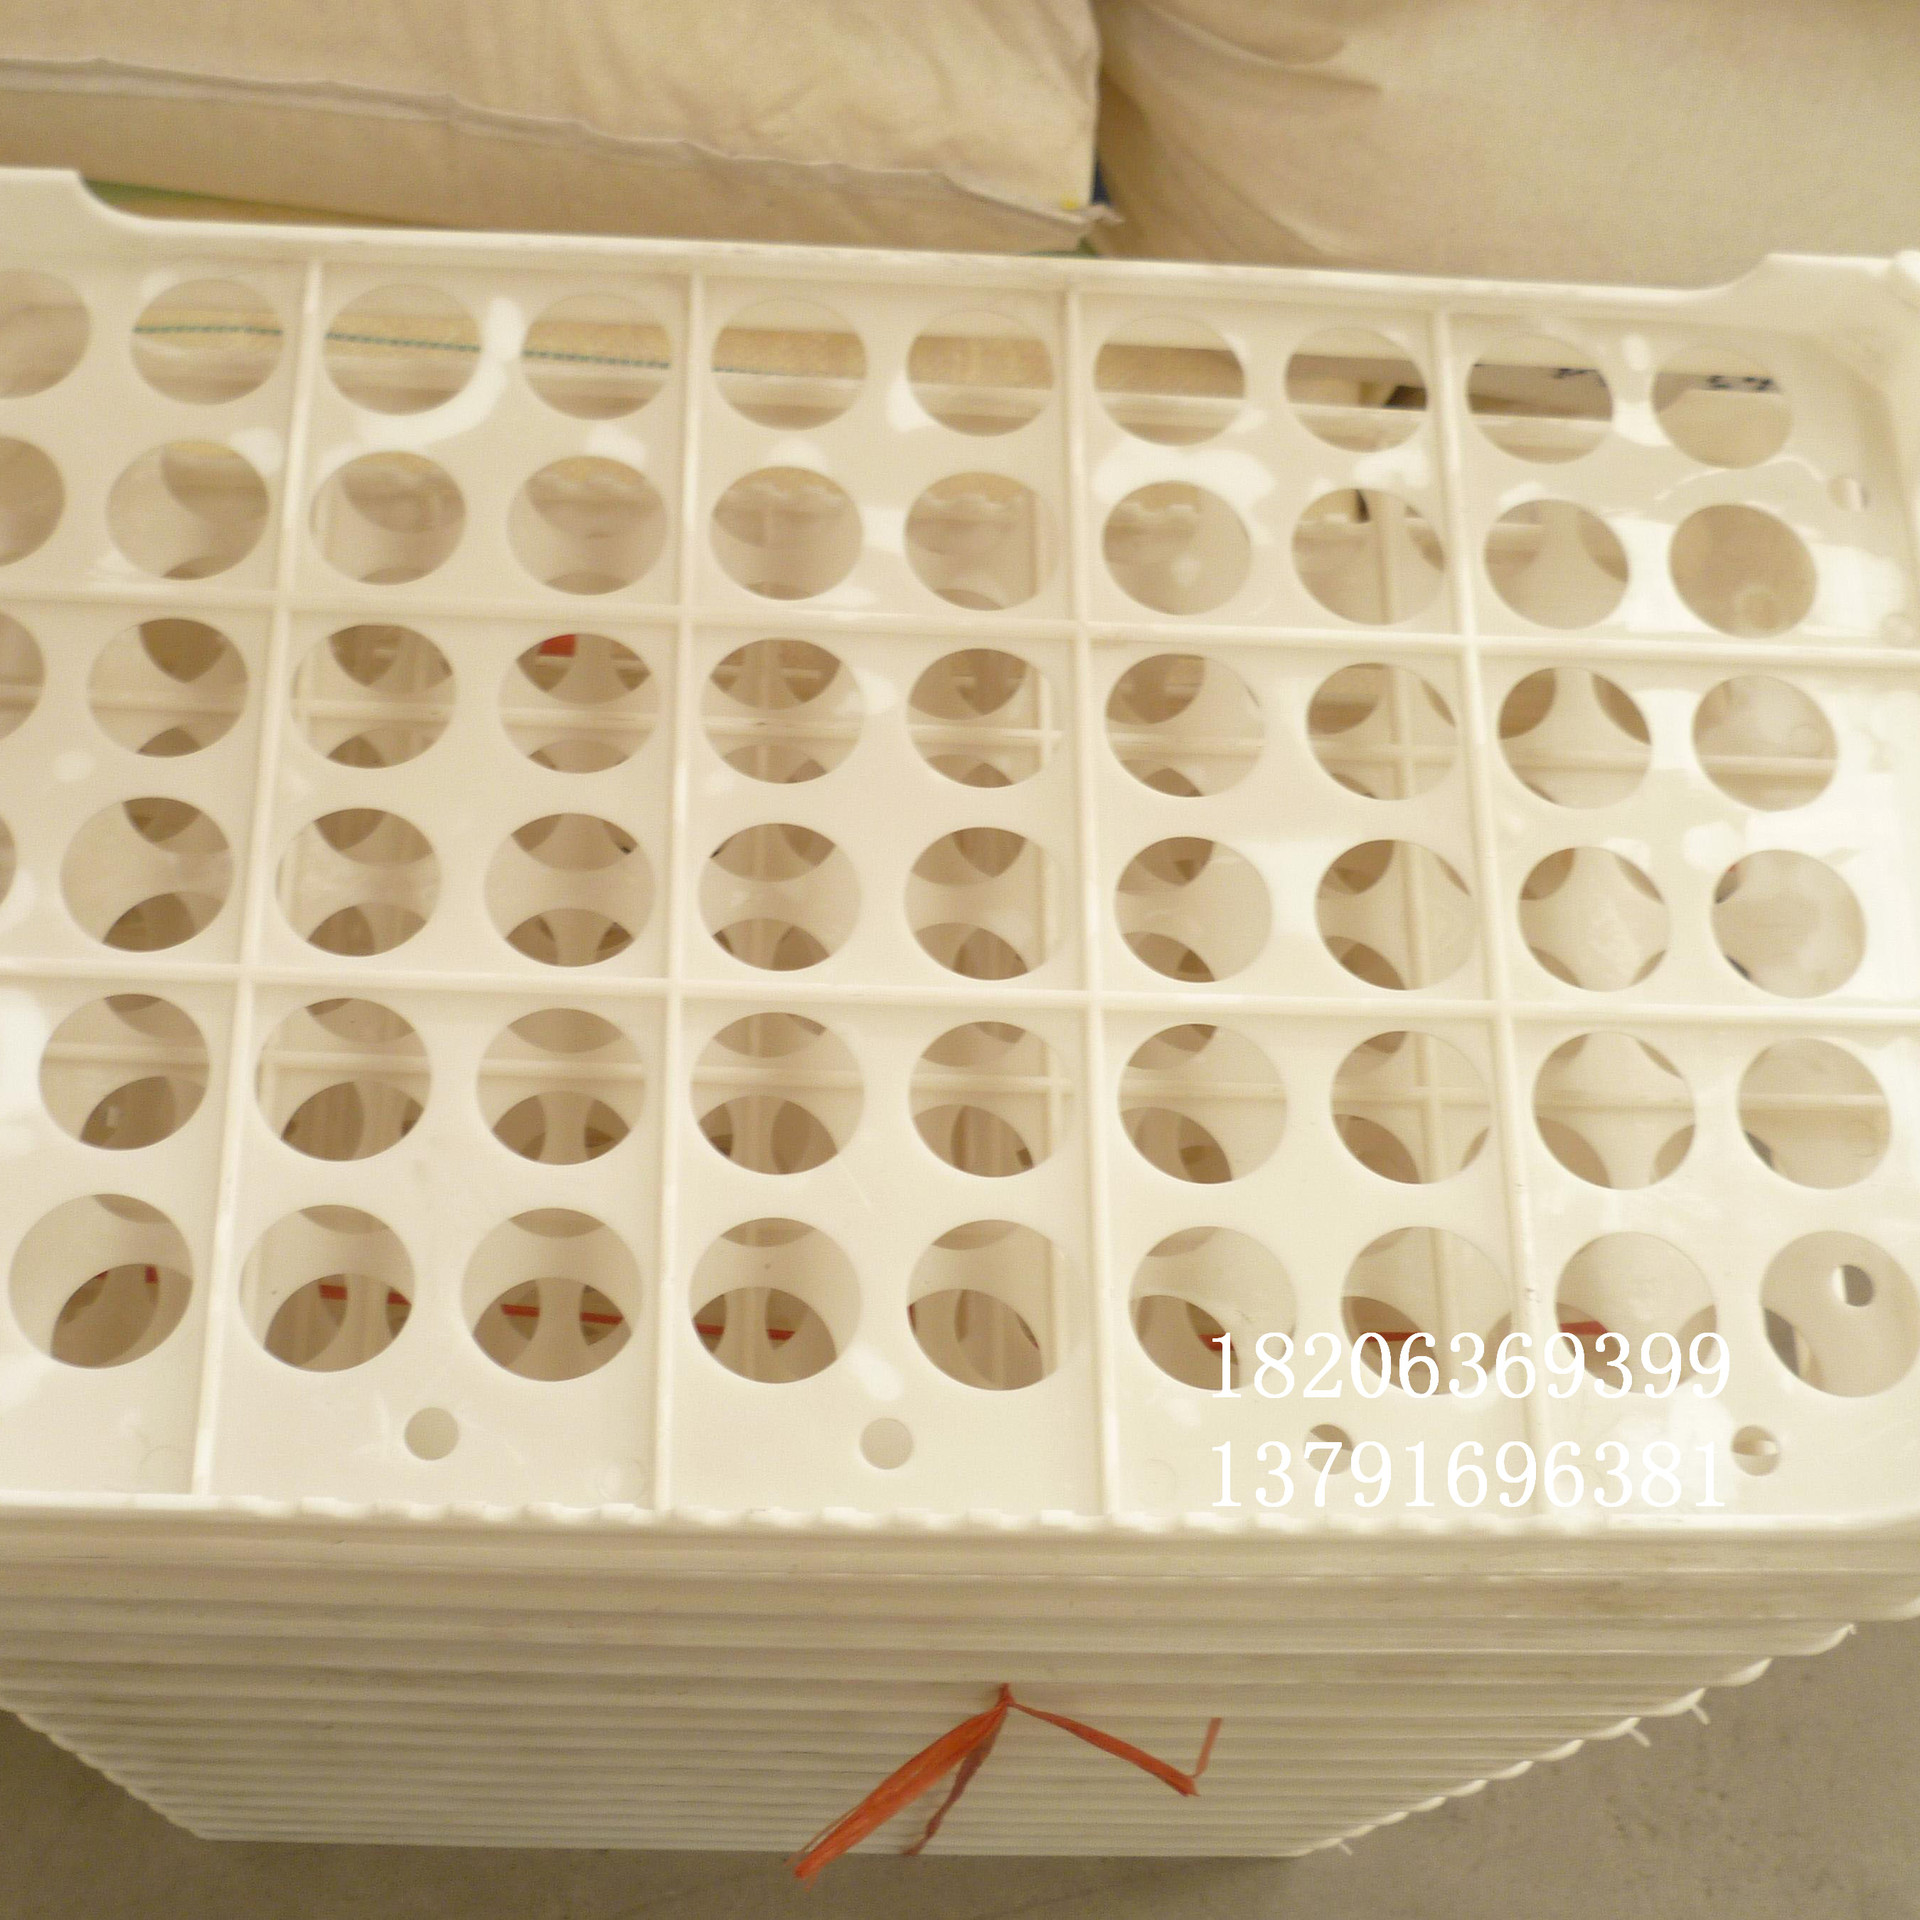 塑料鸡蛋托图片 60枚优质塑料蛋托 鸡蛋托价格